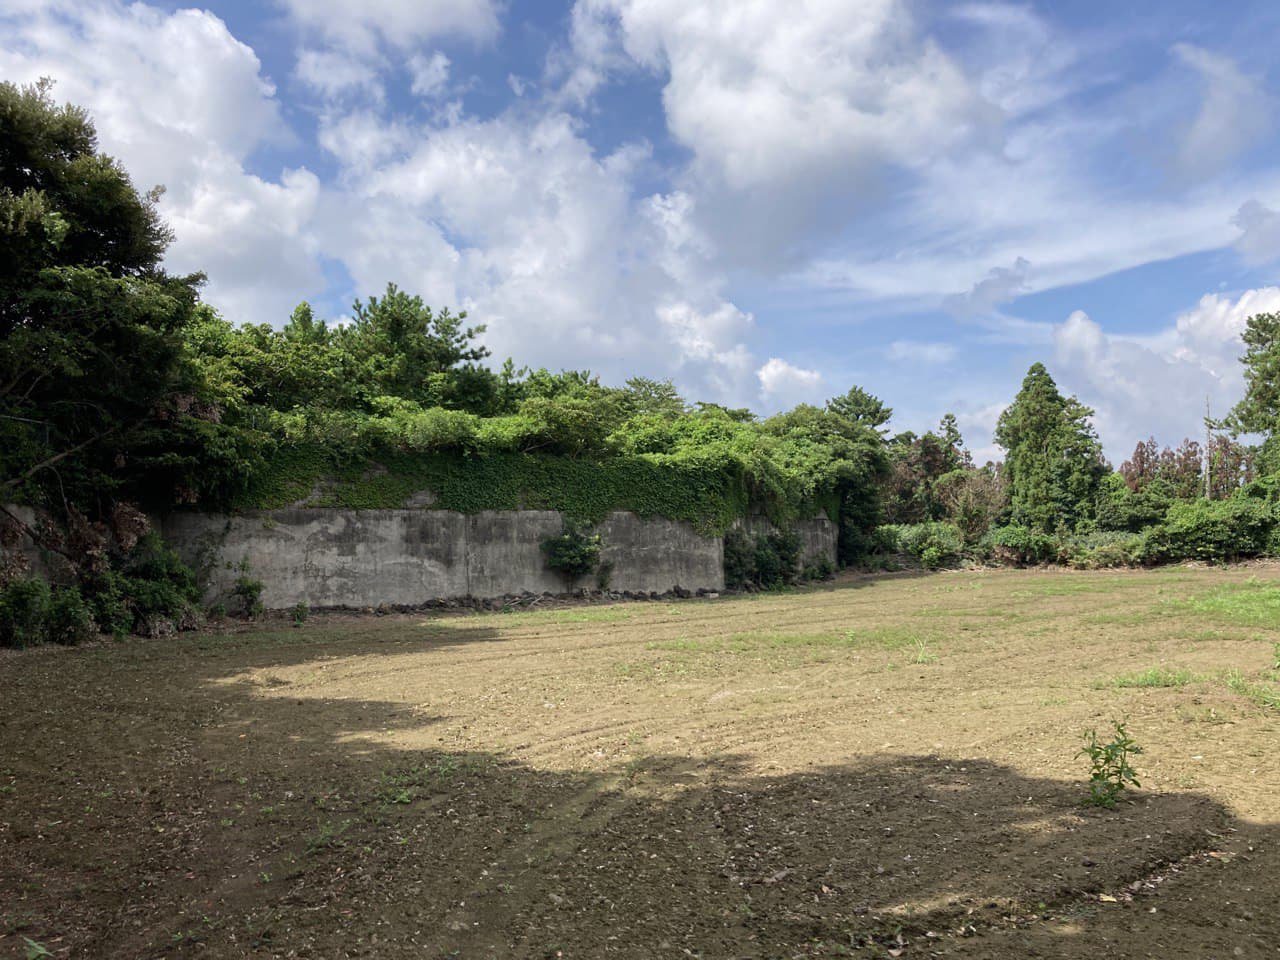 4·3 당시 학살터였던 버들못 근처 밭. 현재는 개인 소유의 농지로 안내판이 세워져 있지 않음.